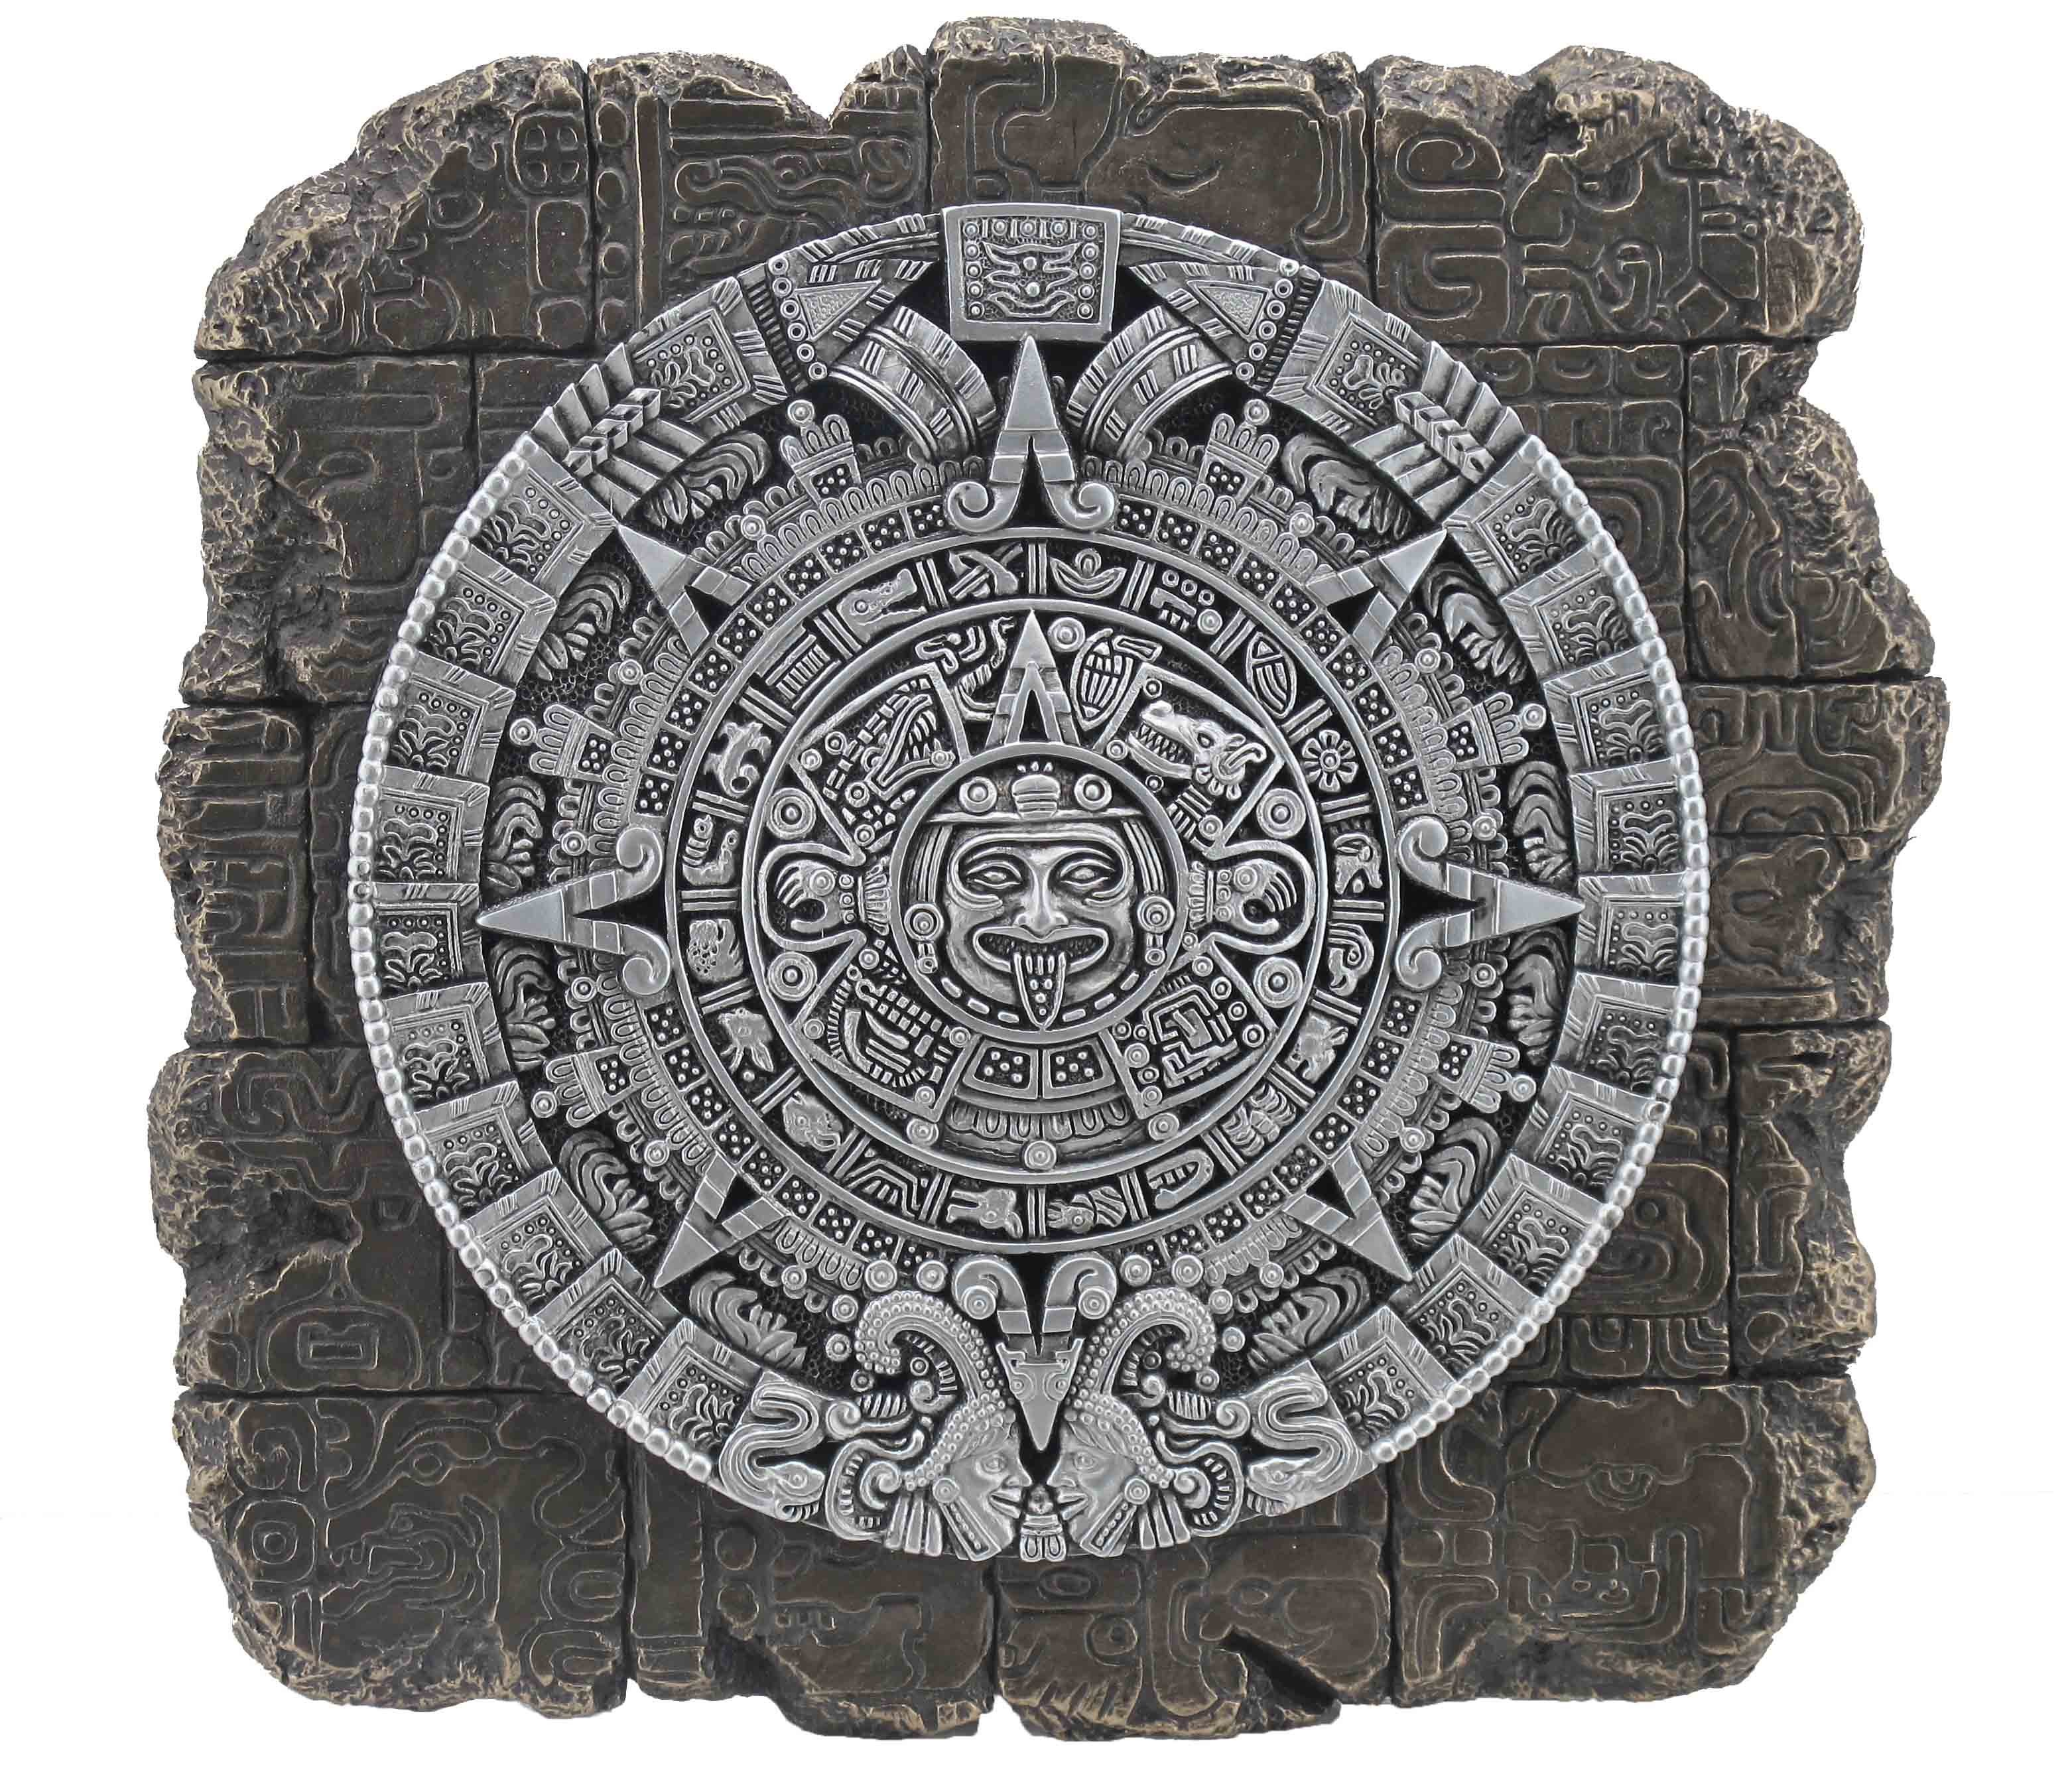 Vogler direct Gmbh Wanddekoobjekt Wandrelief Aztekenkalender - bronziert by Veronese, von Hand bronziert, LxBxH ca. 23x22x4cm